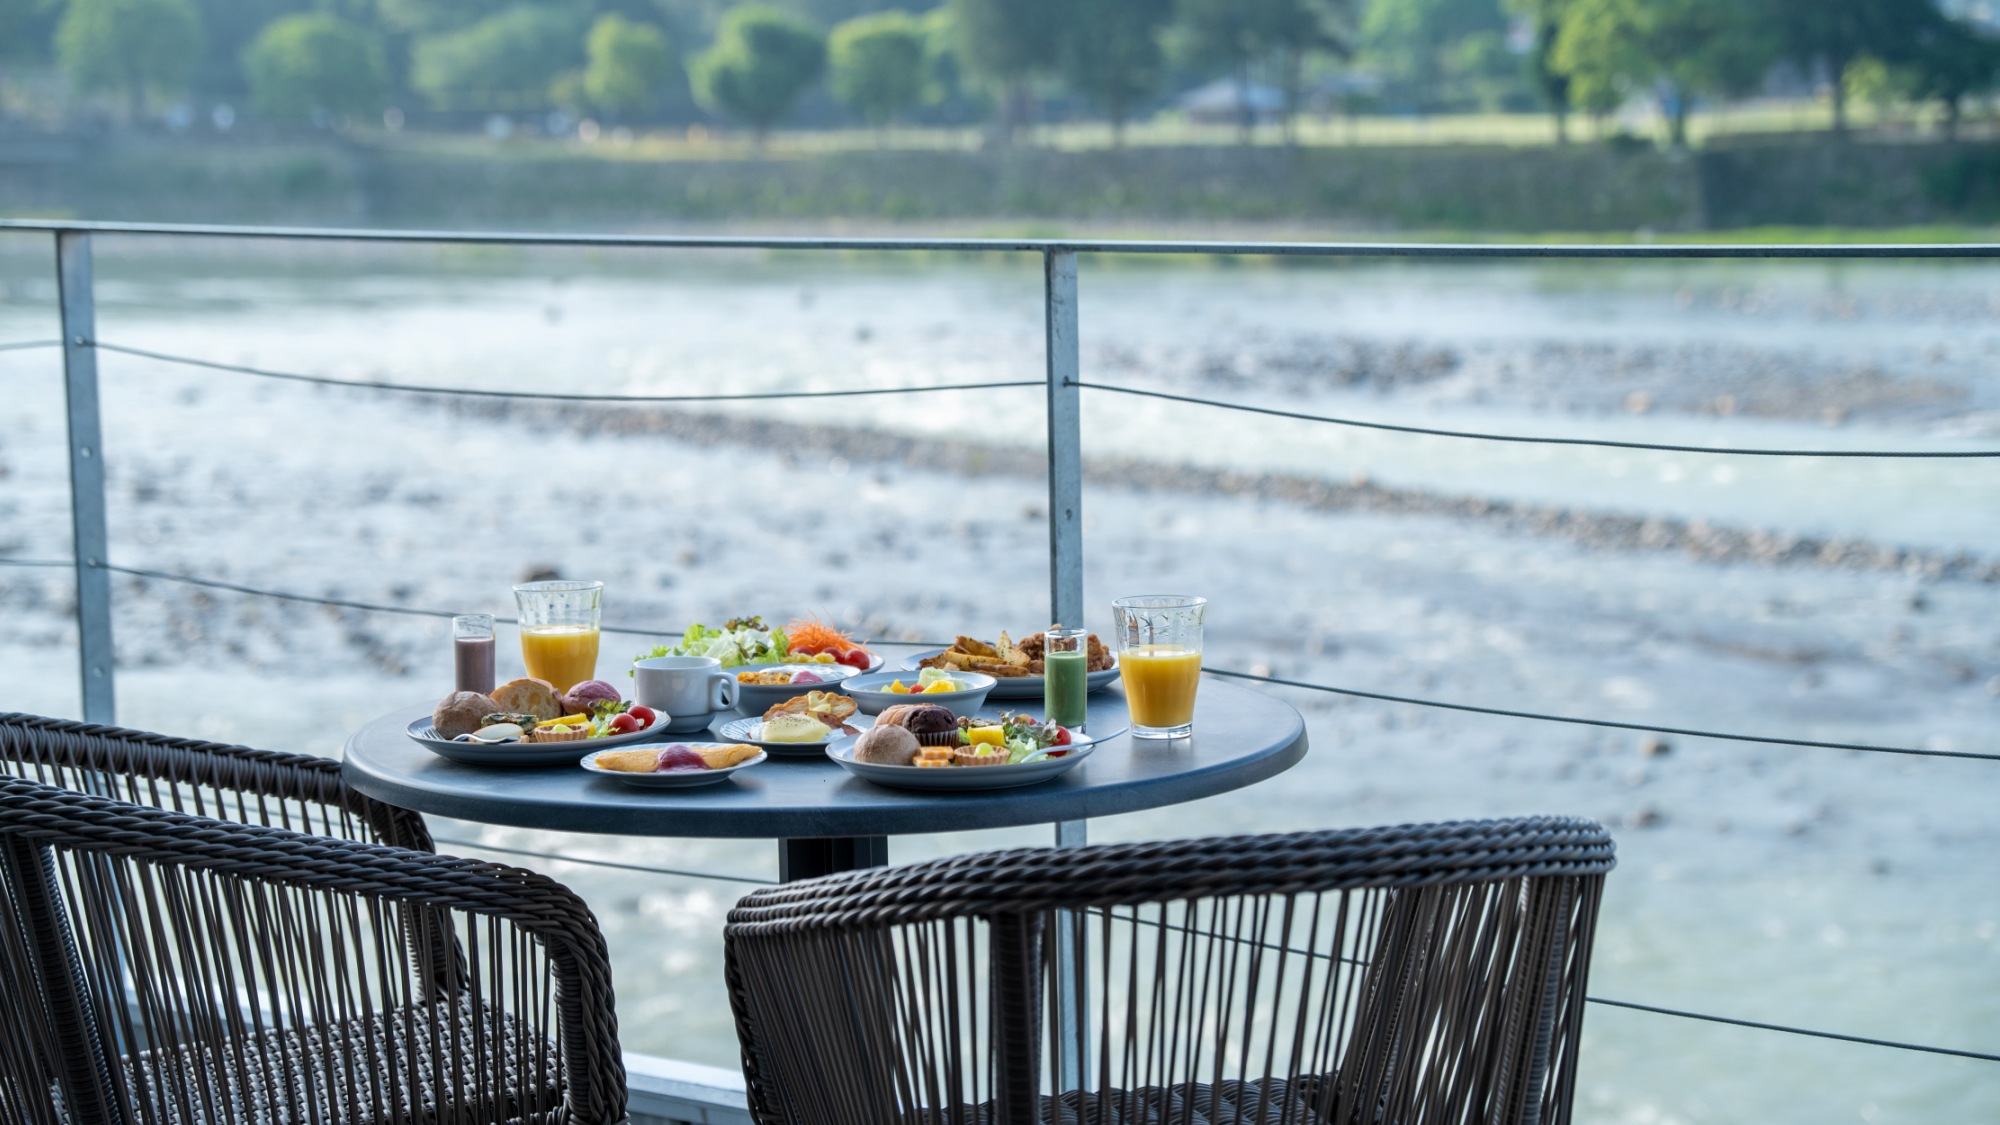 朝食美しい球磨川を眺めながらお楽しみいただけます。